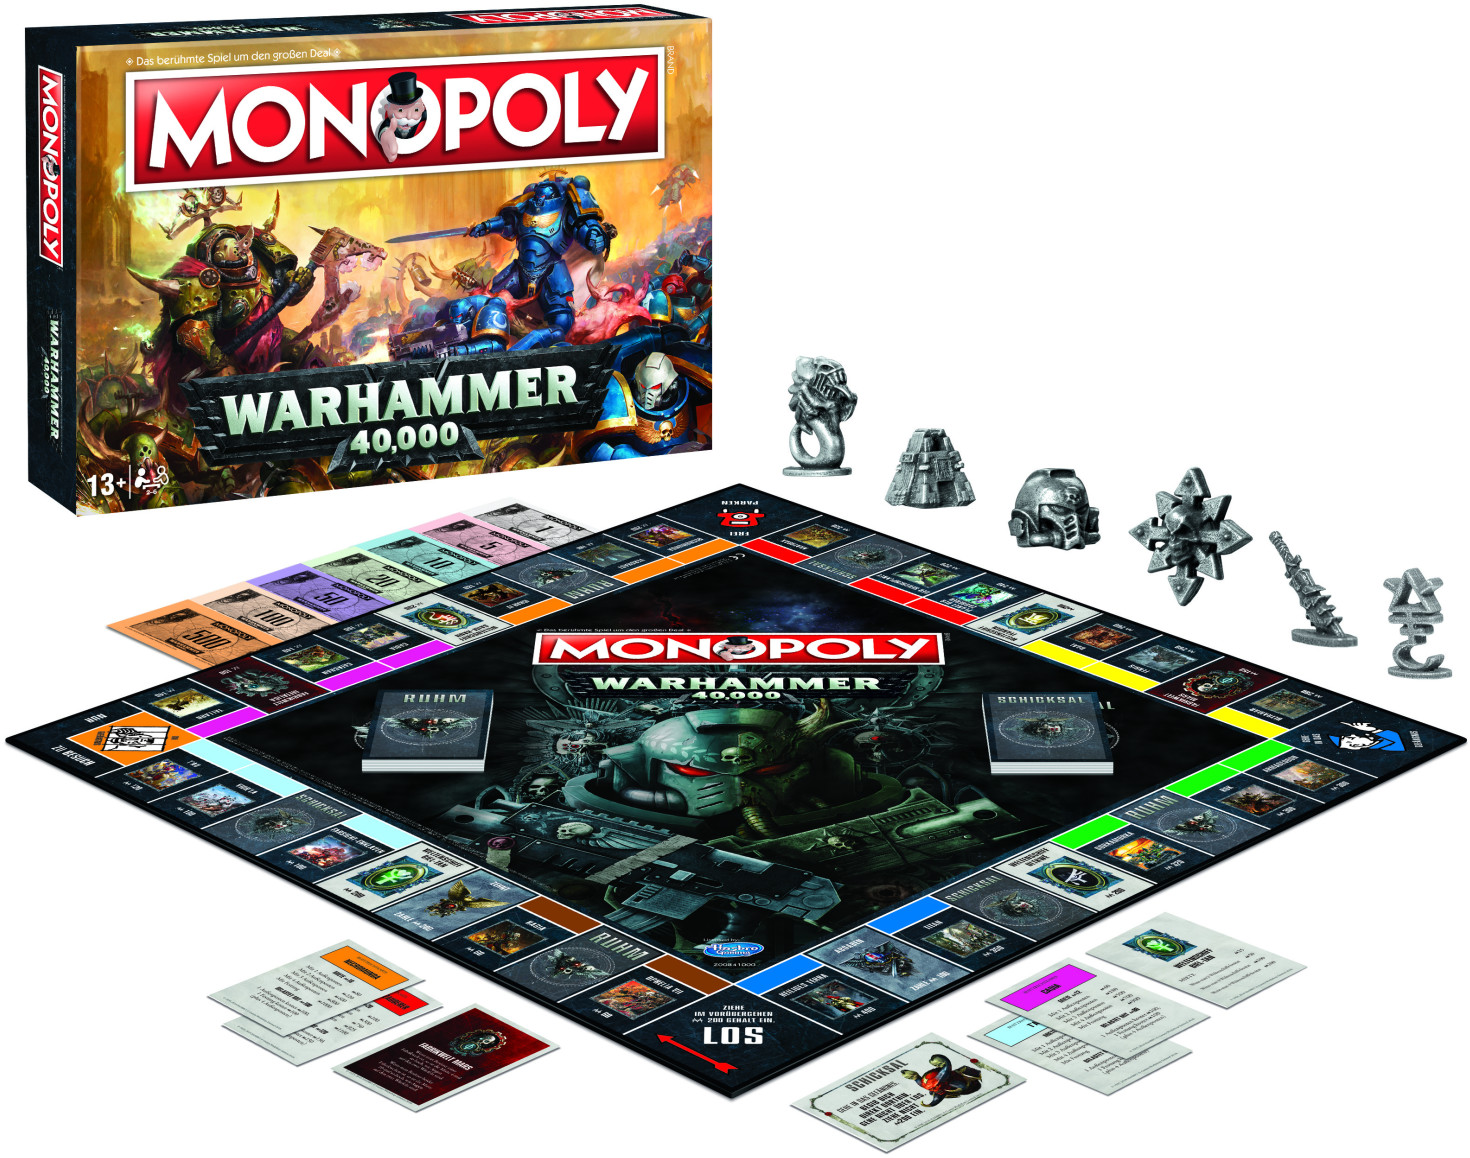 Alternate - Brettspiel Monopoly Warhammer 40.000 für nur 19,78€ inkl. Versand - Schnell sein!!